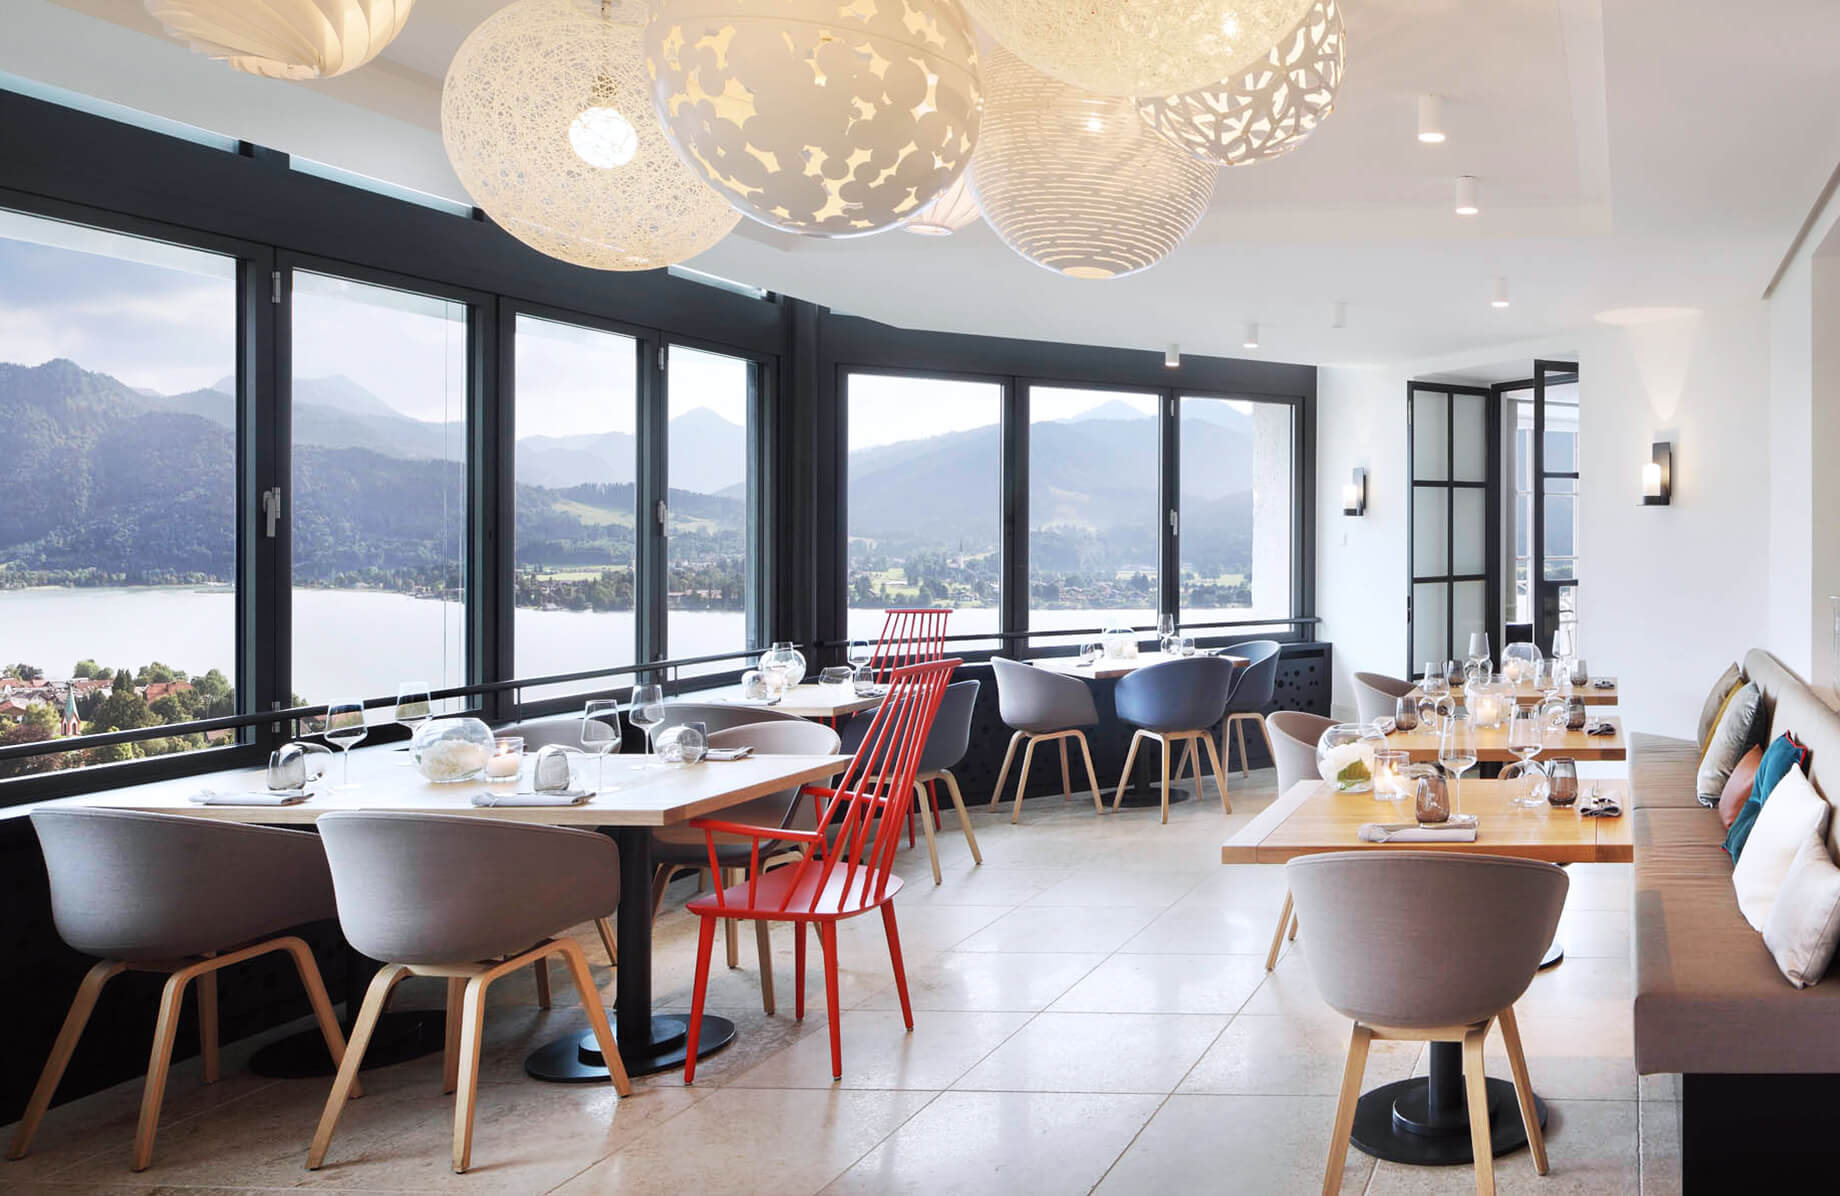 Aufnahme im Restaurant Alpenbrasserie am Tegernsee mit mehreren eingedeckten Tischen direkt an einer Fensterfront mit geöffneten Fenstern.